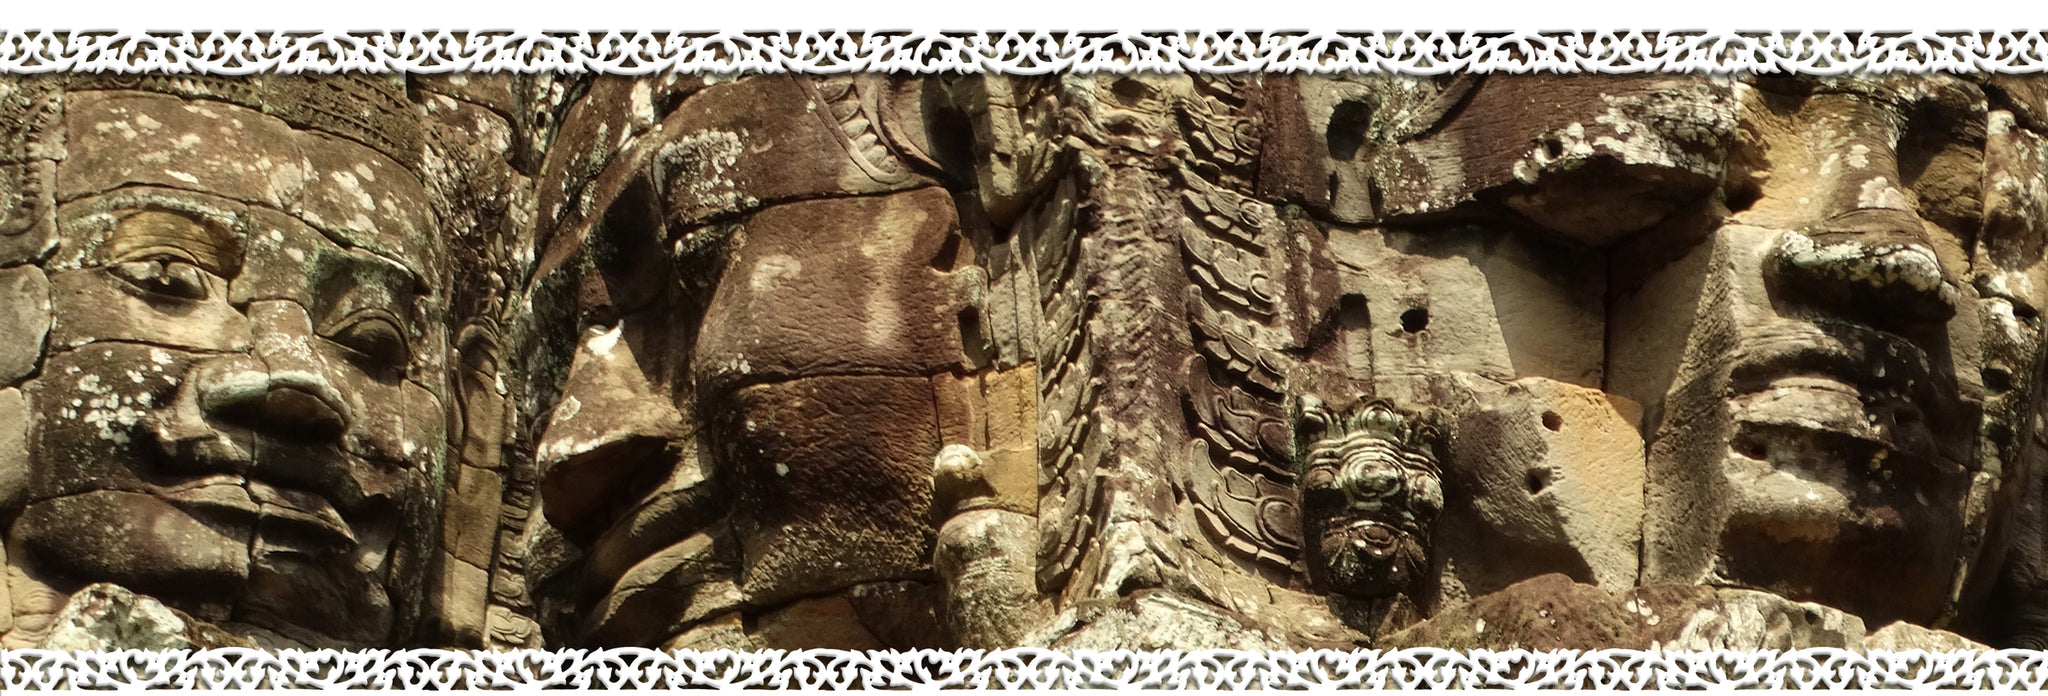 iBodhi Angkor Collection Image